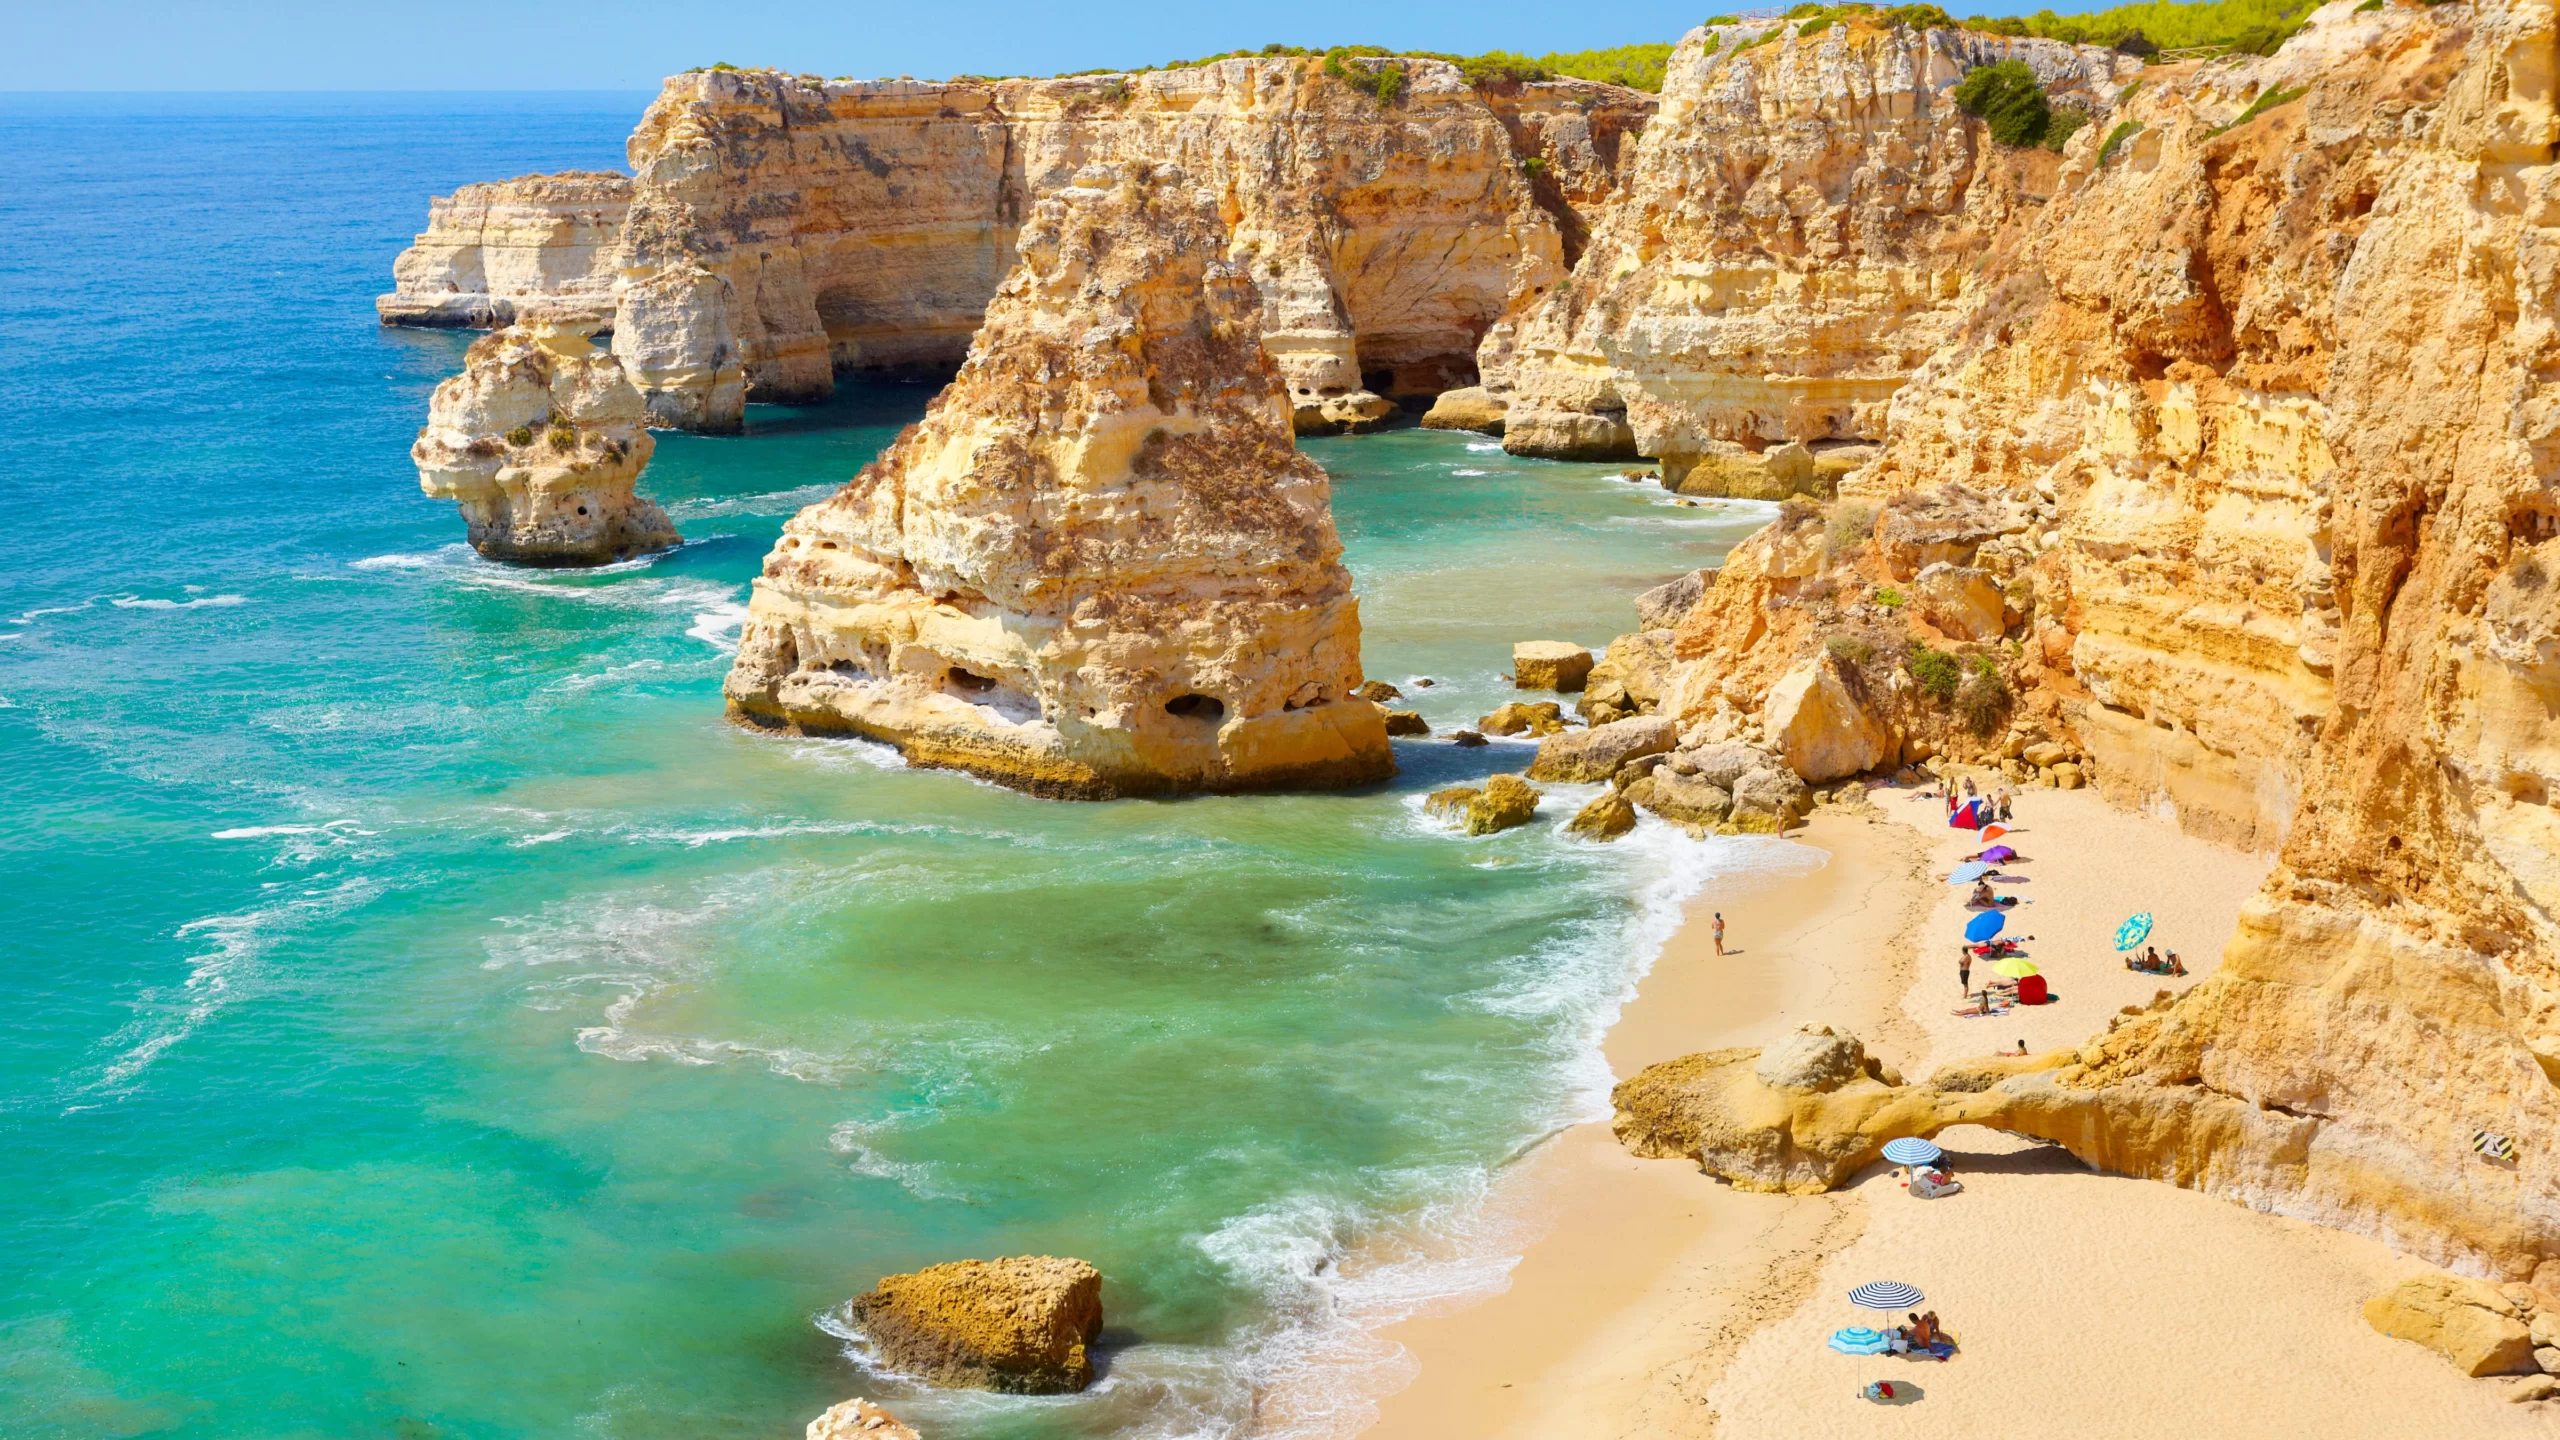 Vacanta in minunatul Algarve, Portugalia – 200 euro (zbor + cazare 6 nopti) – cunoscut pentru plaje exotice